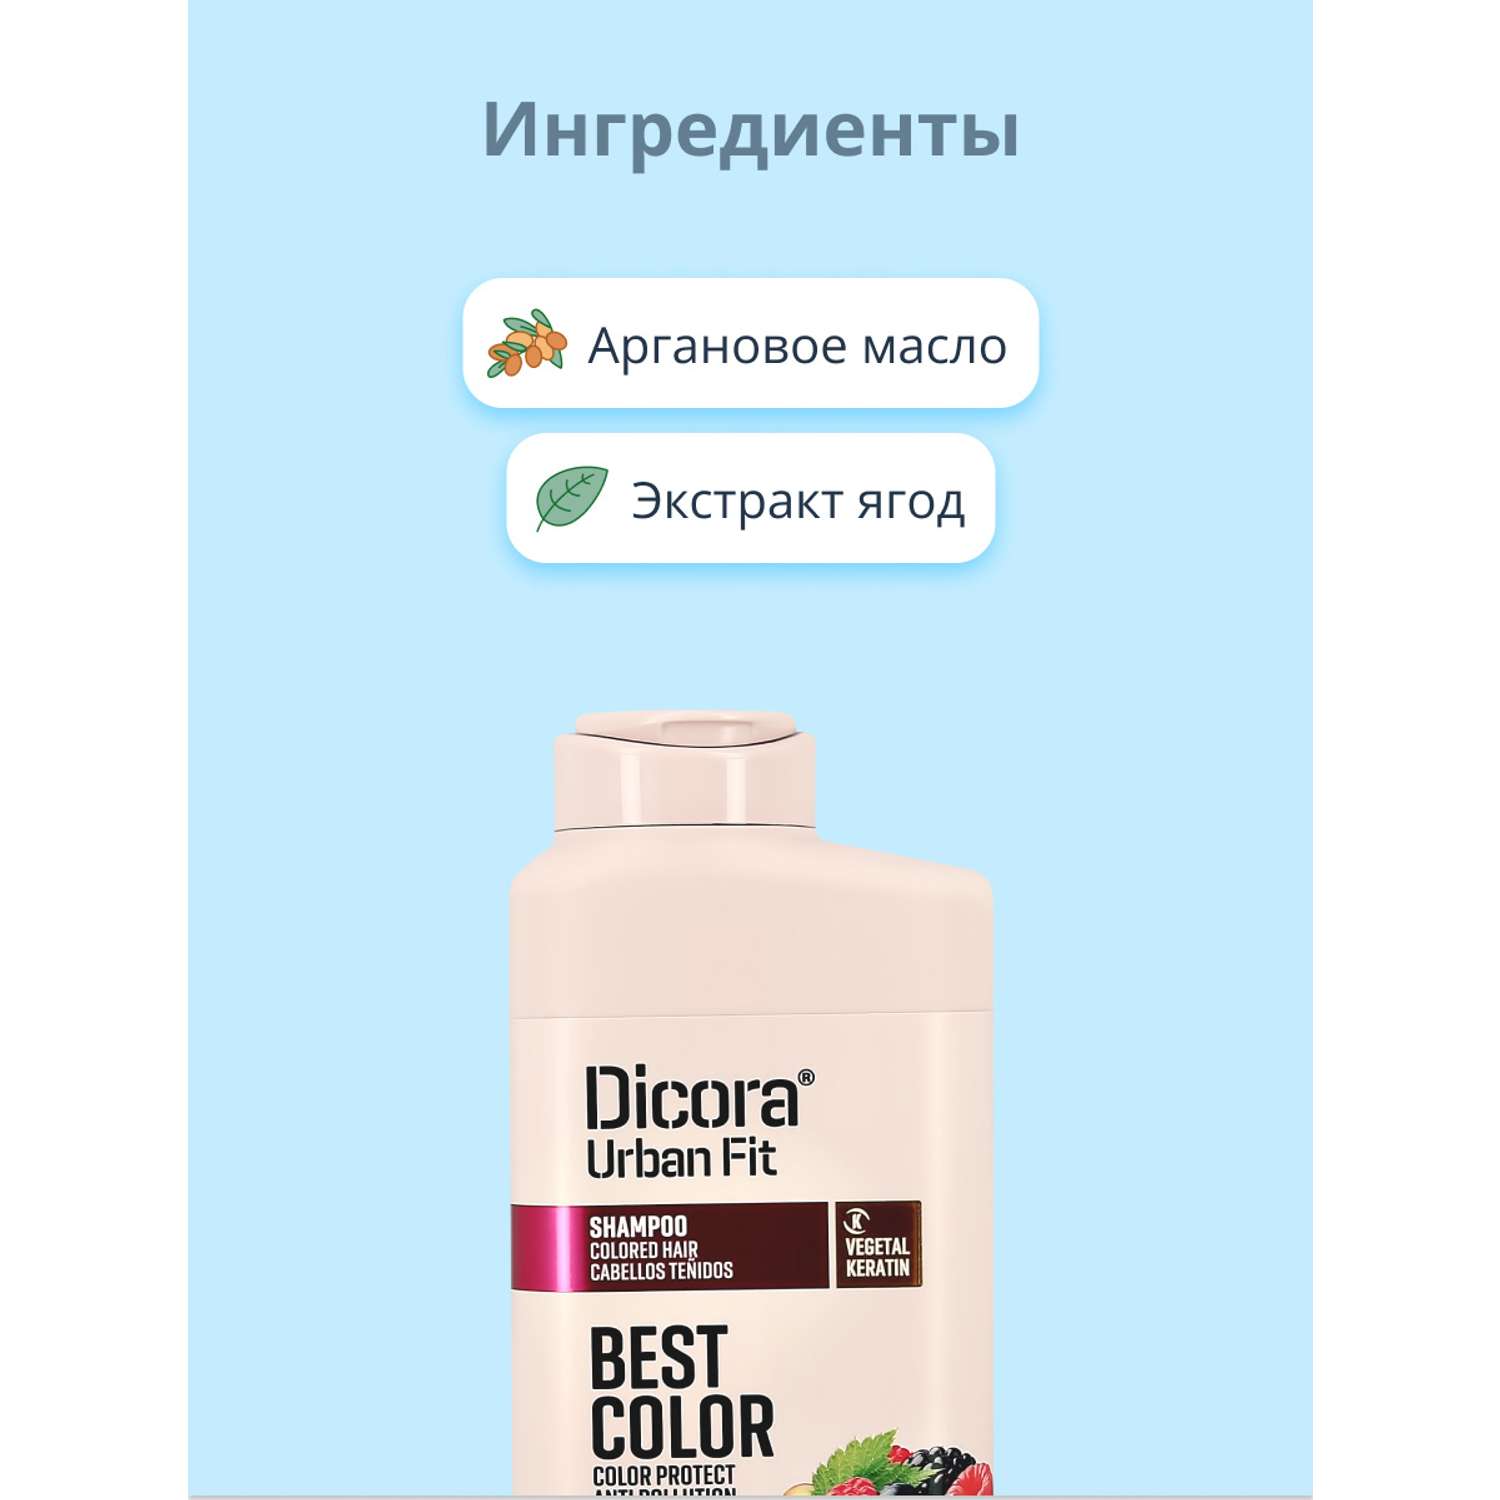 Шампунь DICORA URBAN FIT с аргановым маслом и экстрактами ягод (для защиты цвета) 400 мл - фото 2